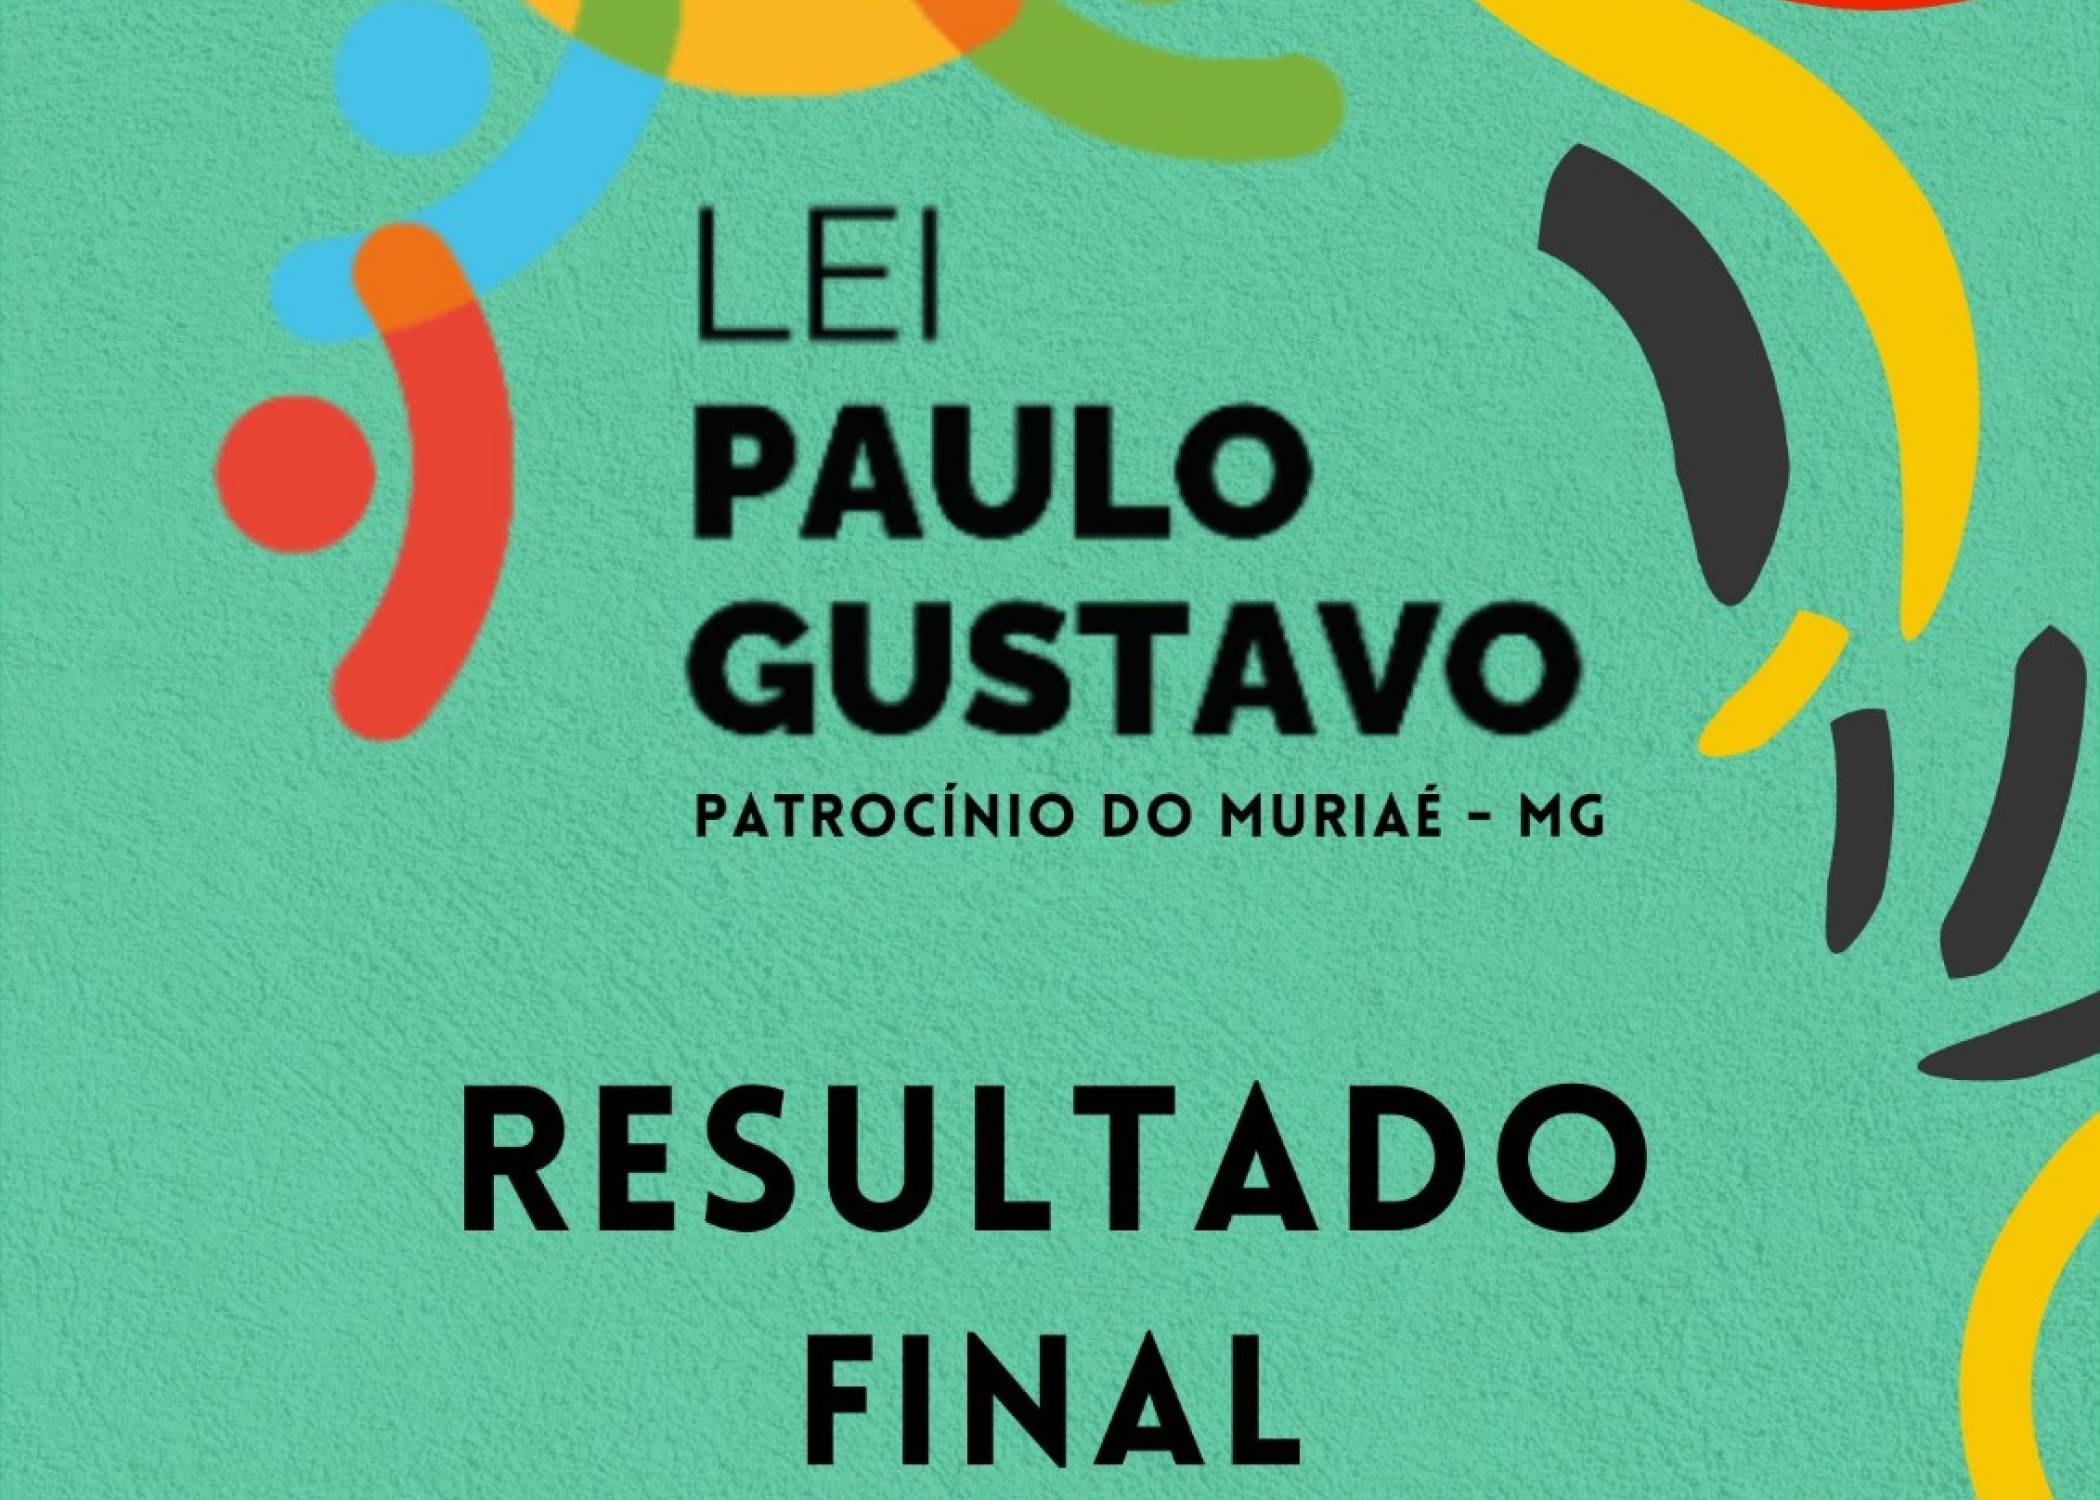 Divulgação Resultado Final - Lei Paulo Gustavo